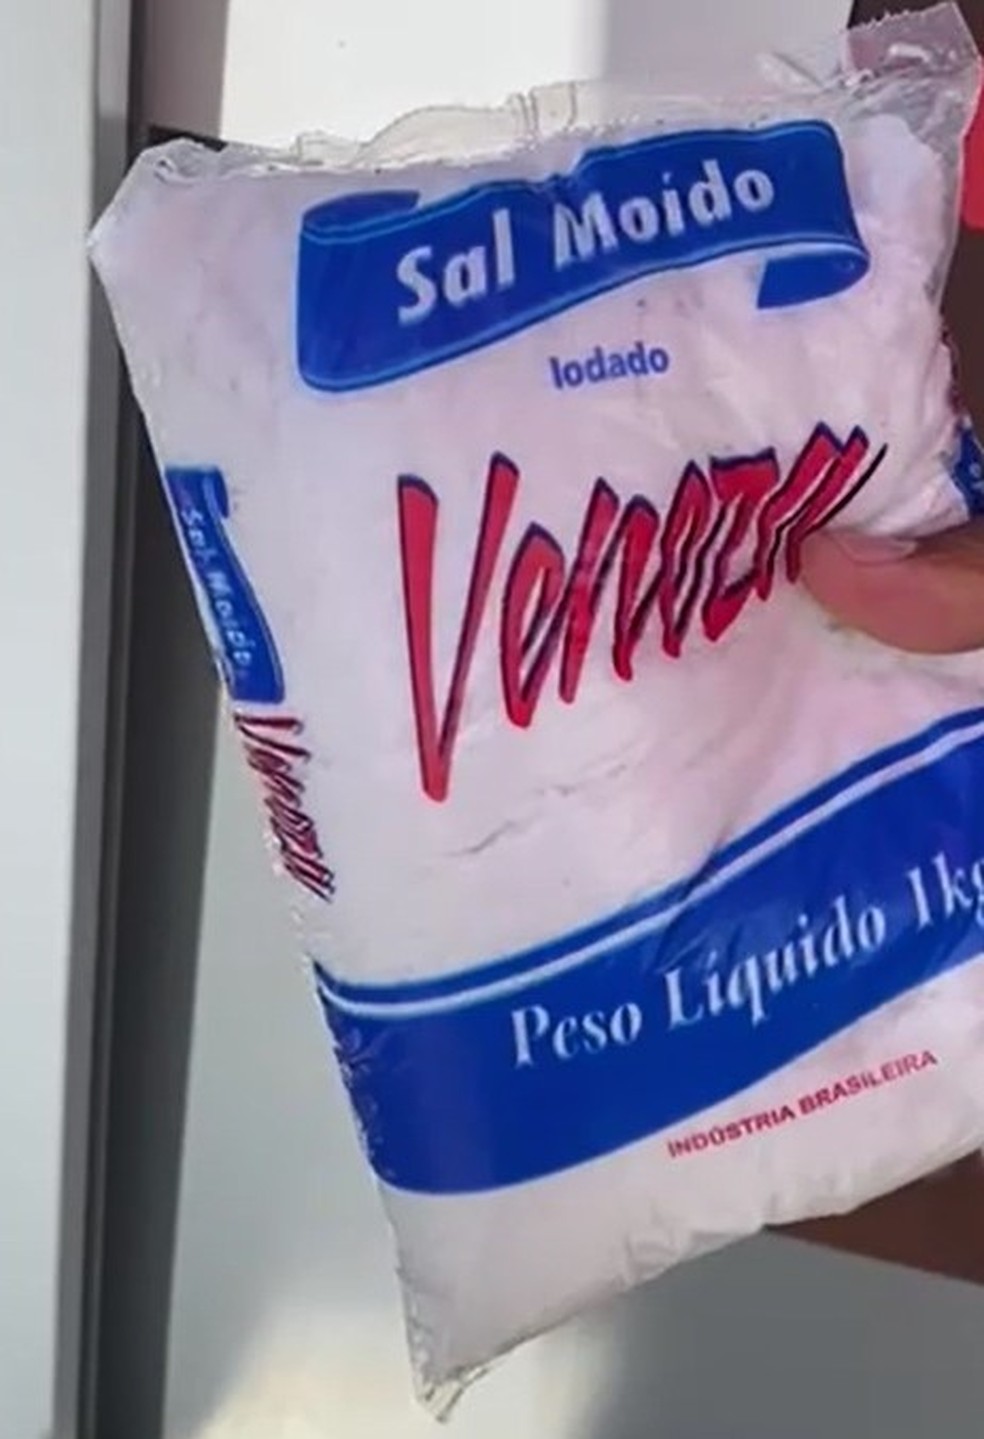 Pacote de sal foi levado por quadrilha para entregar a policial que se passou por cliente na venda de revólver pela internet — Foto: Polícia Civil/Divulgação 